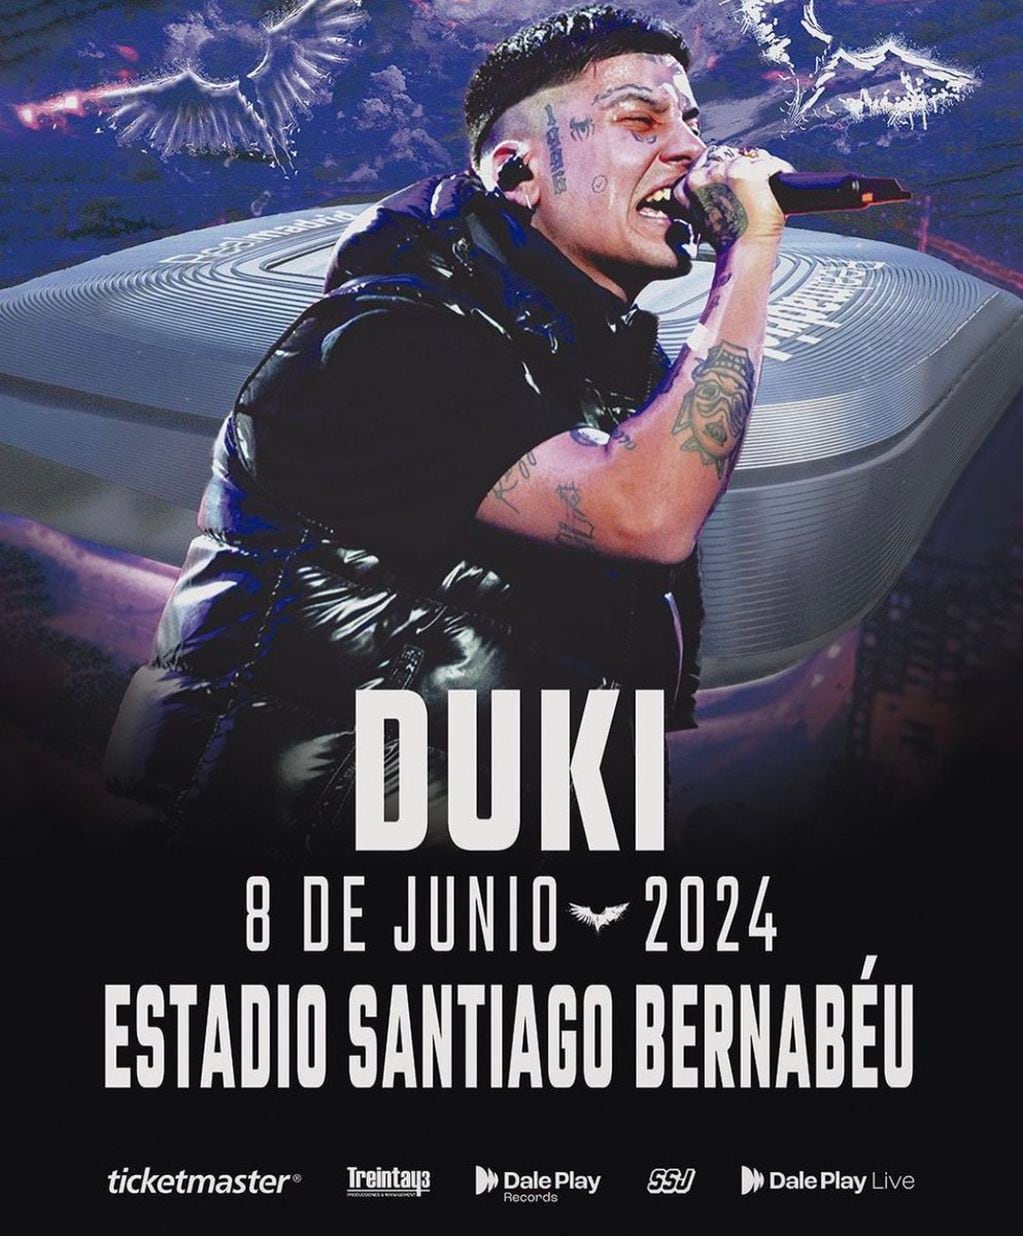 Duki se presentará en el Bernabéu el 8 de junio de 2024